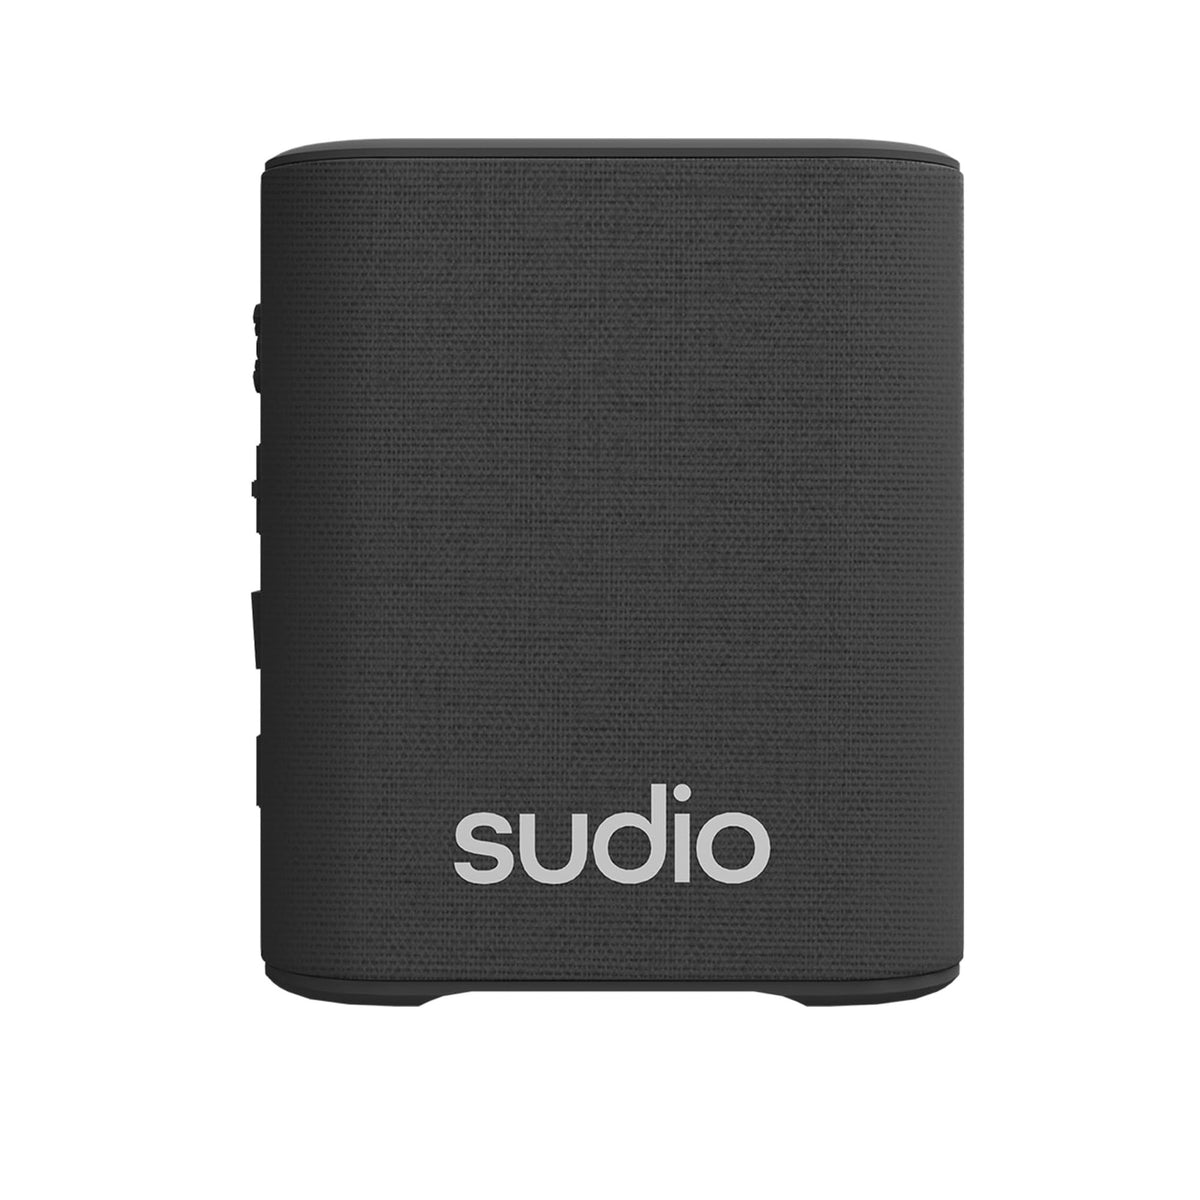 Sudio S2 Portable Bluetooth Speaker